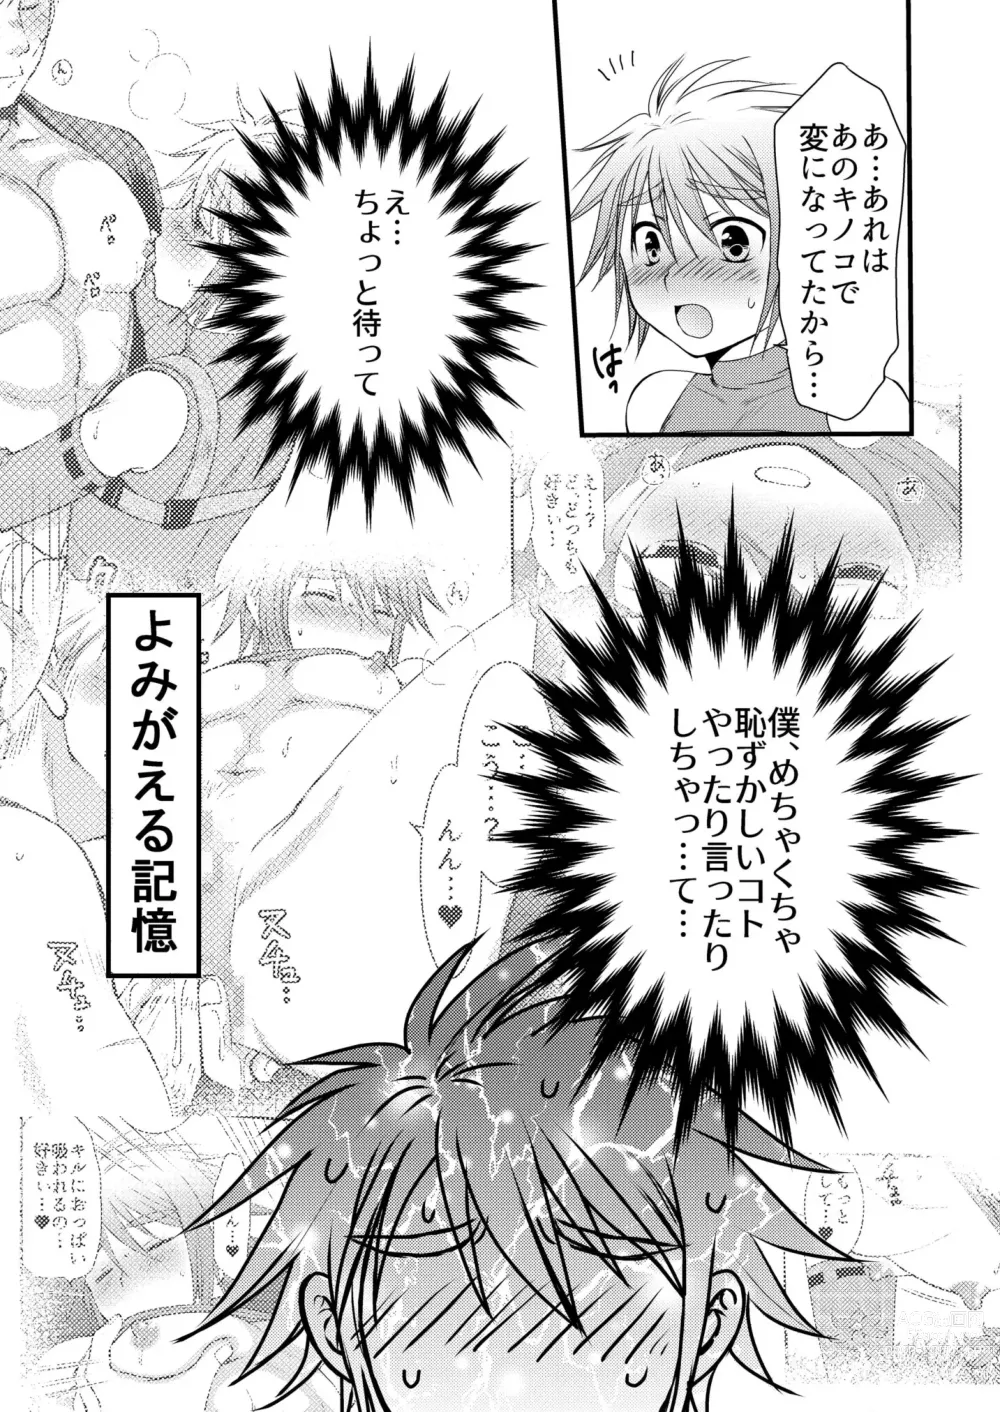 Page 35 of doujinshi Osukina Kare to Hajimete no Kinoko Kari